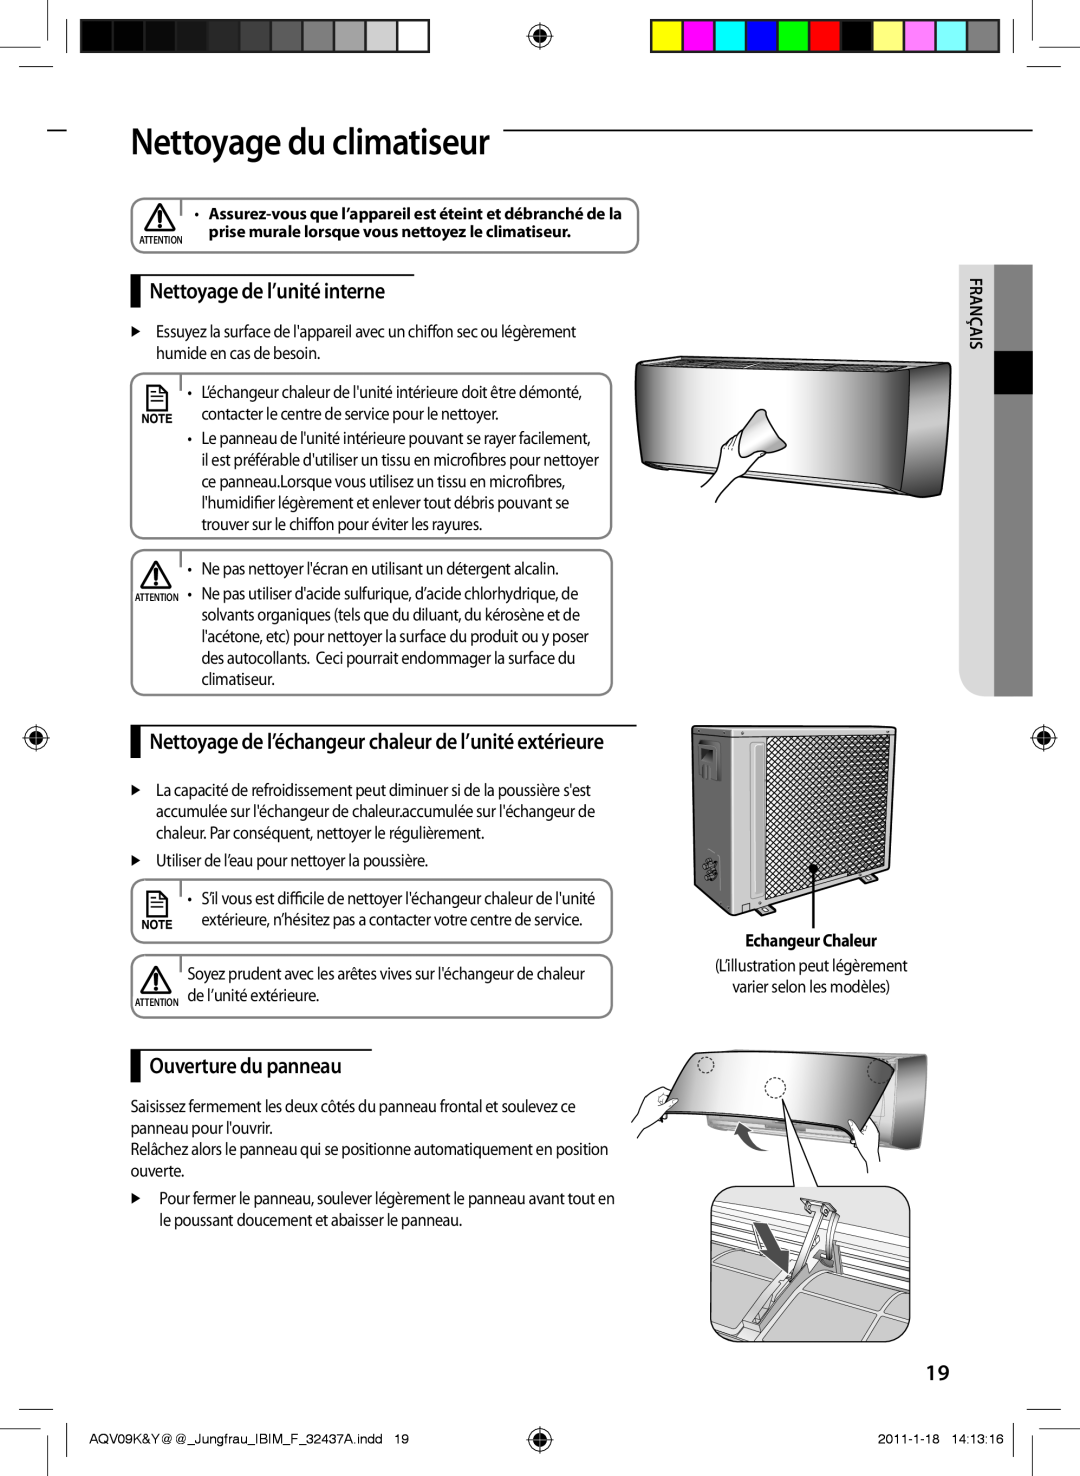 Samsung AQV18YWAX manual Nettoyage du climatiseur, Nettoyage de l’unité interne, Ouverture du panneau, Echangeur Chaleur 